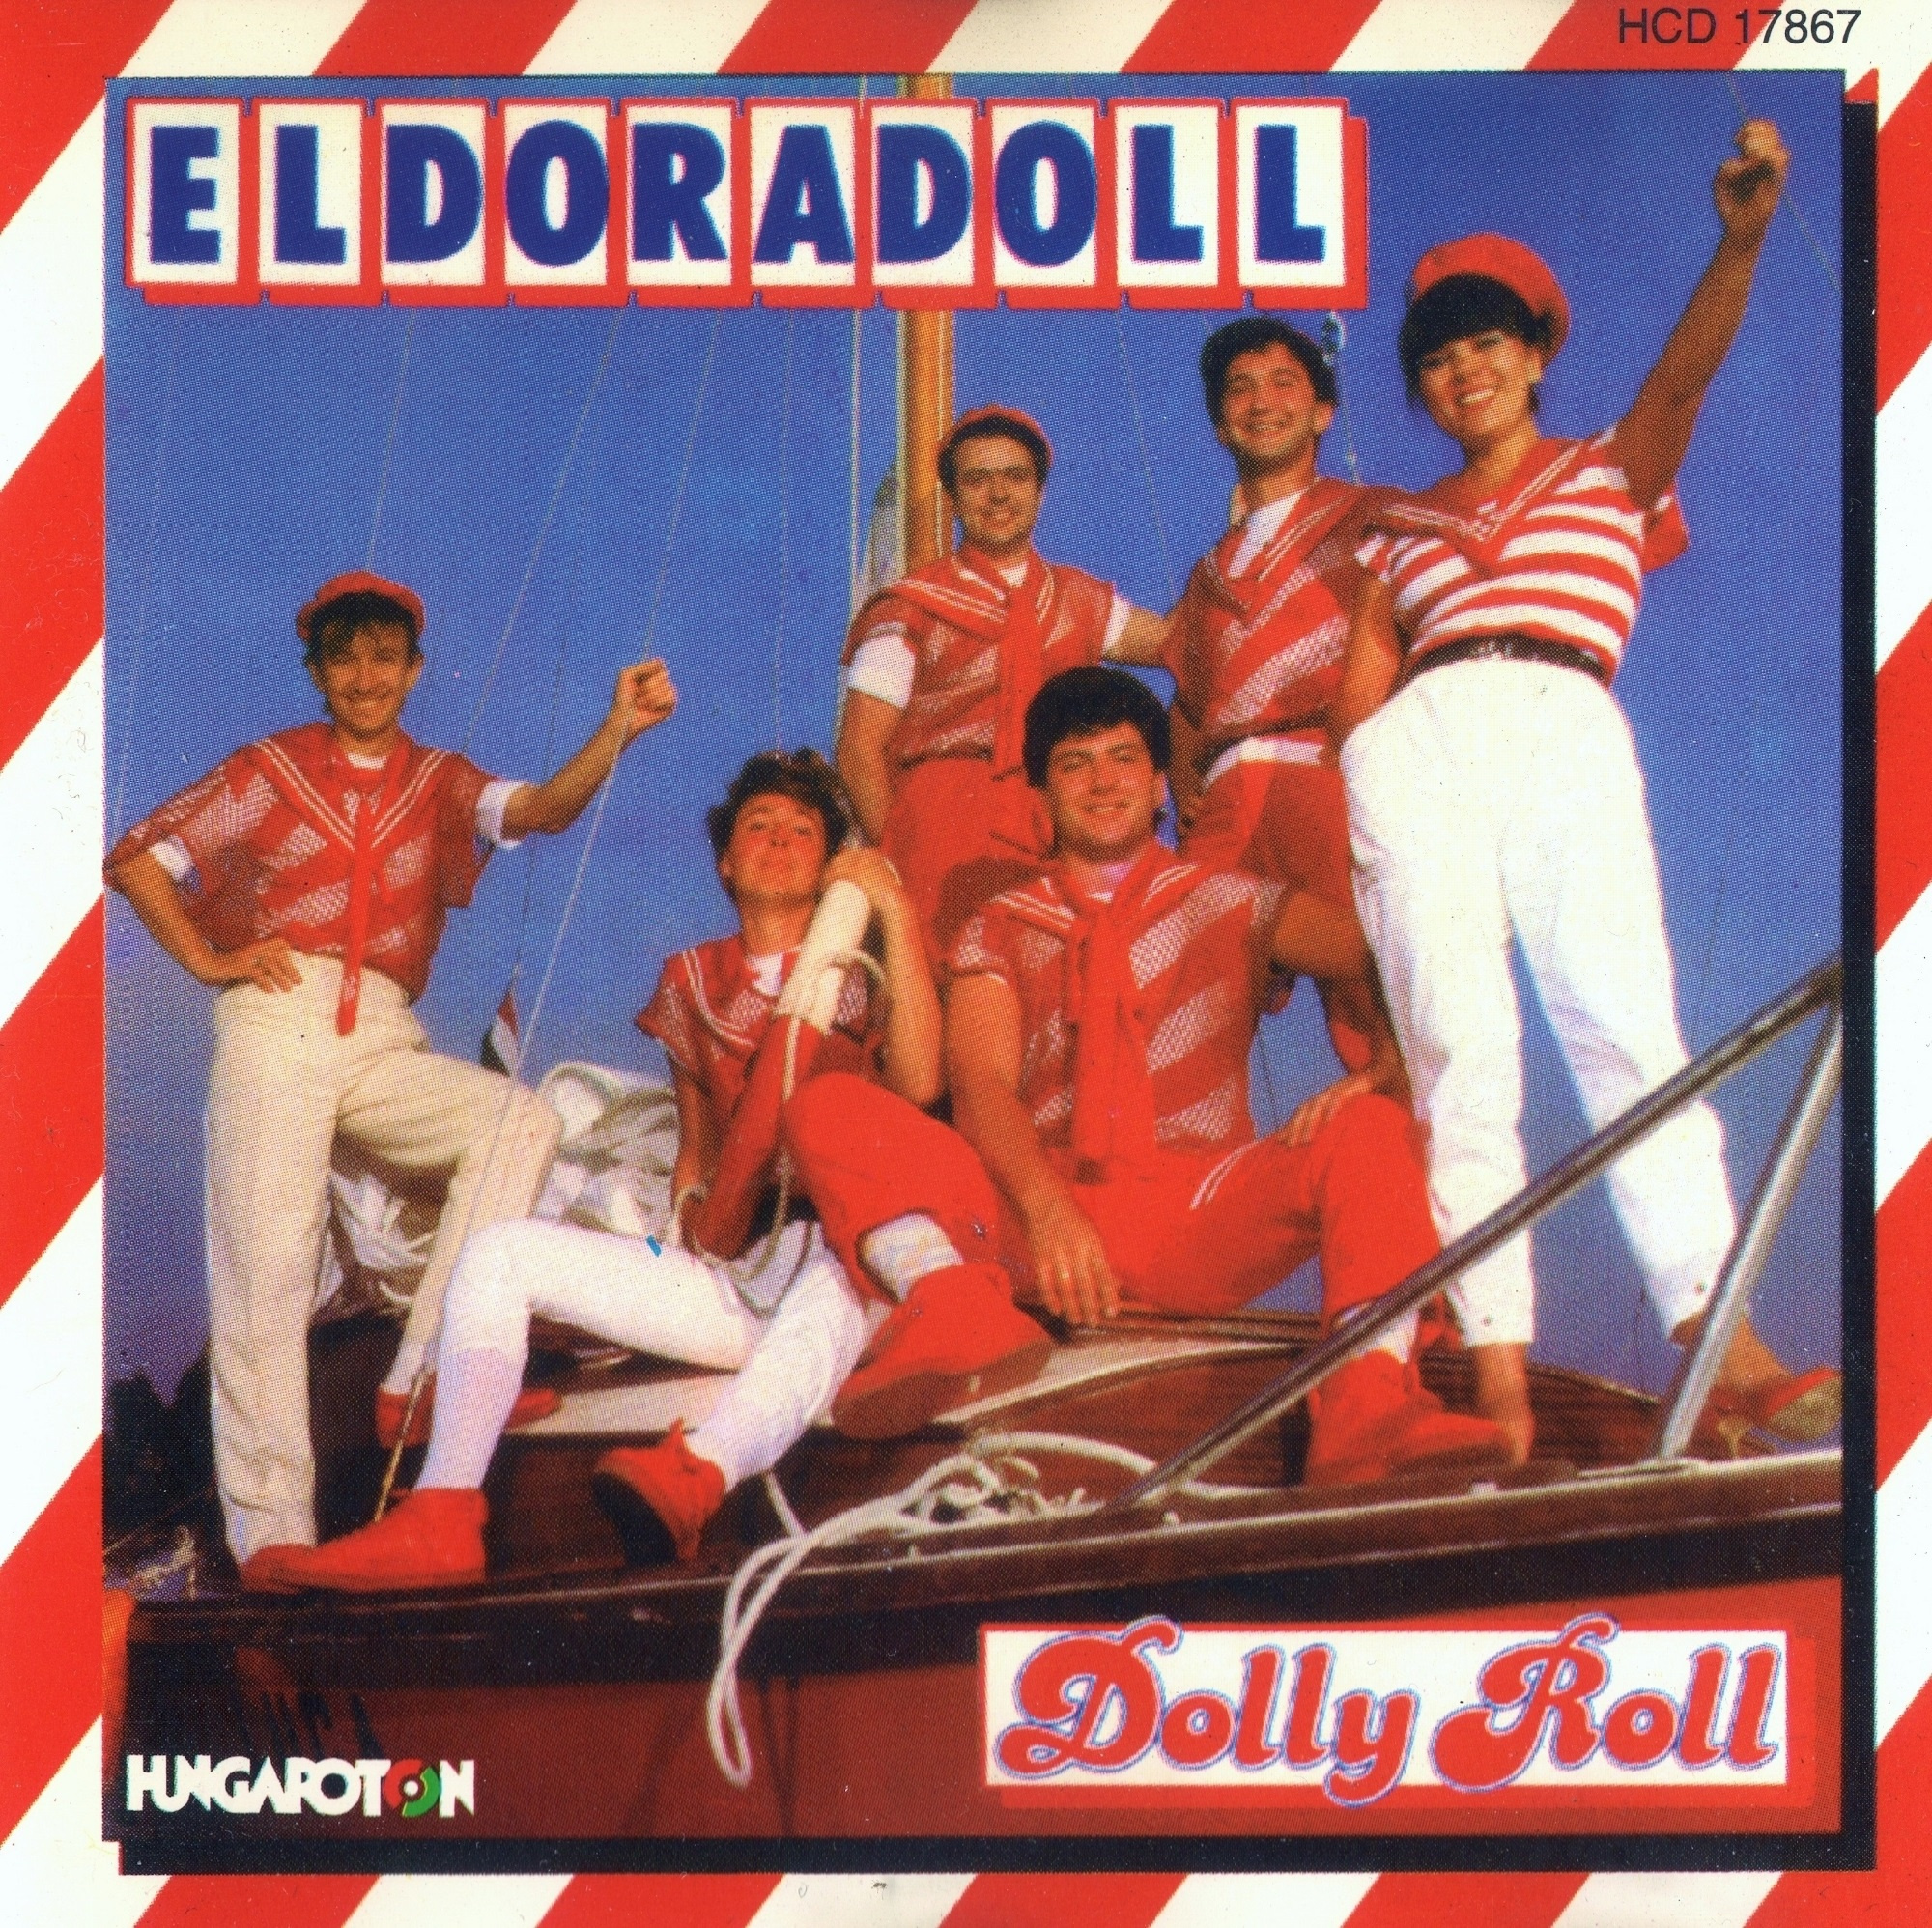 A Dolly Roll népszerű albuma, az Eldoradoll ugyancsak 1984-ben jelent meg.